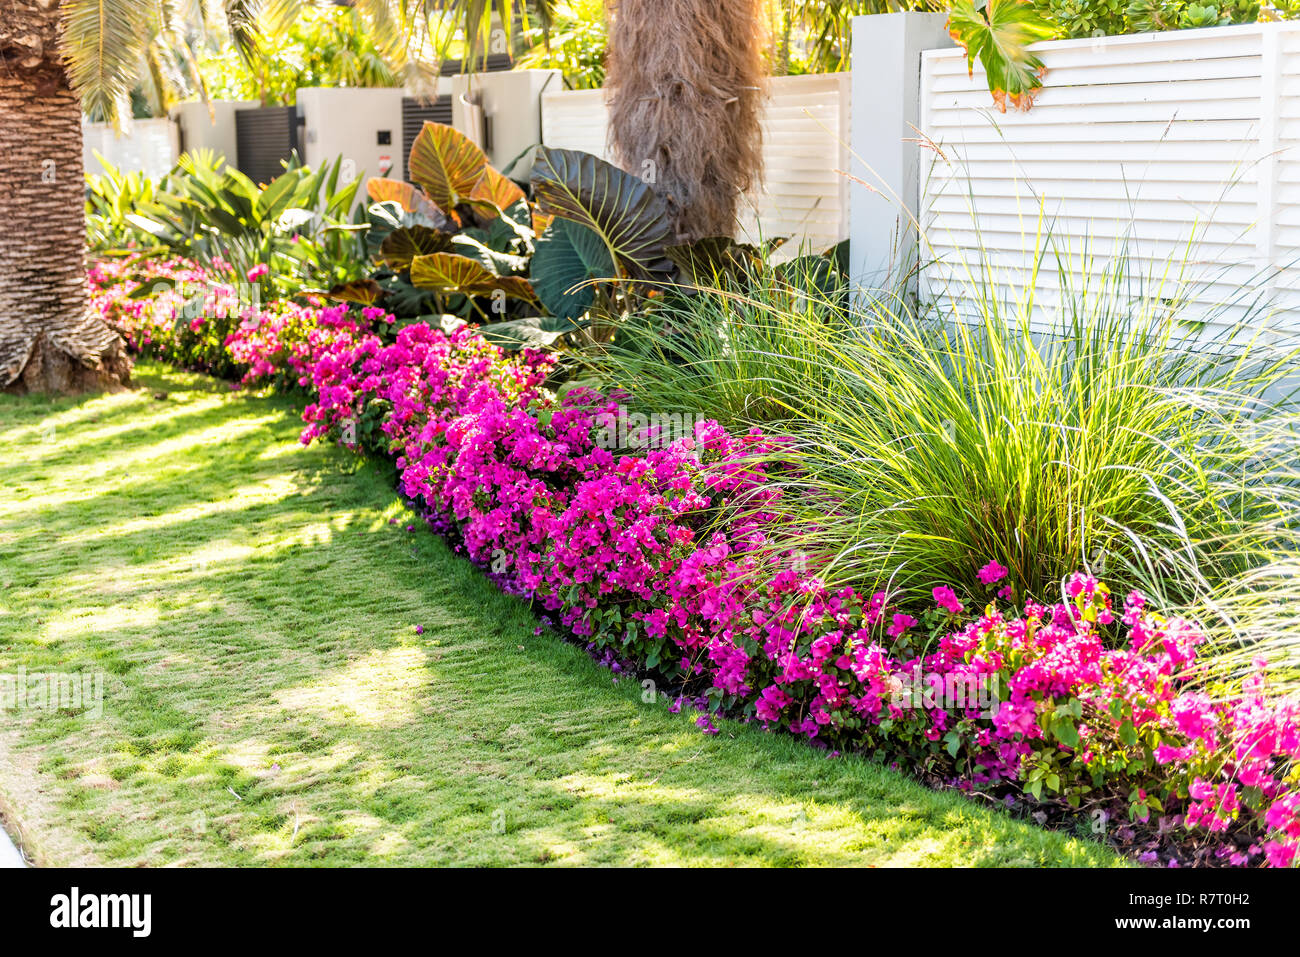 Lebendige rosafarbene Bougainvillea Blüten in Florida Keys oder Miami, grüne Pflanzen Landschaftsbau angelegten Futter Bürgersteig Straße Straße Haus Eingang Tor Stockfoto